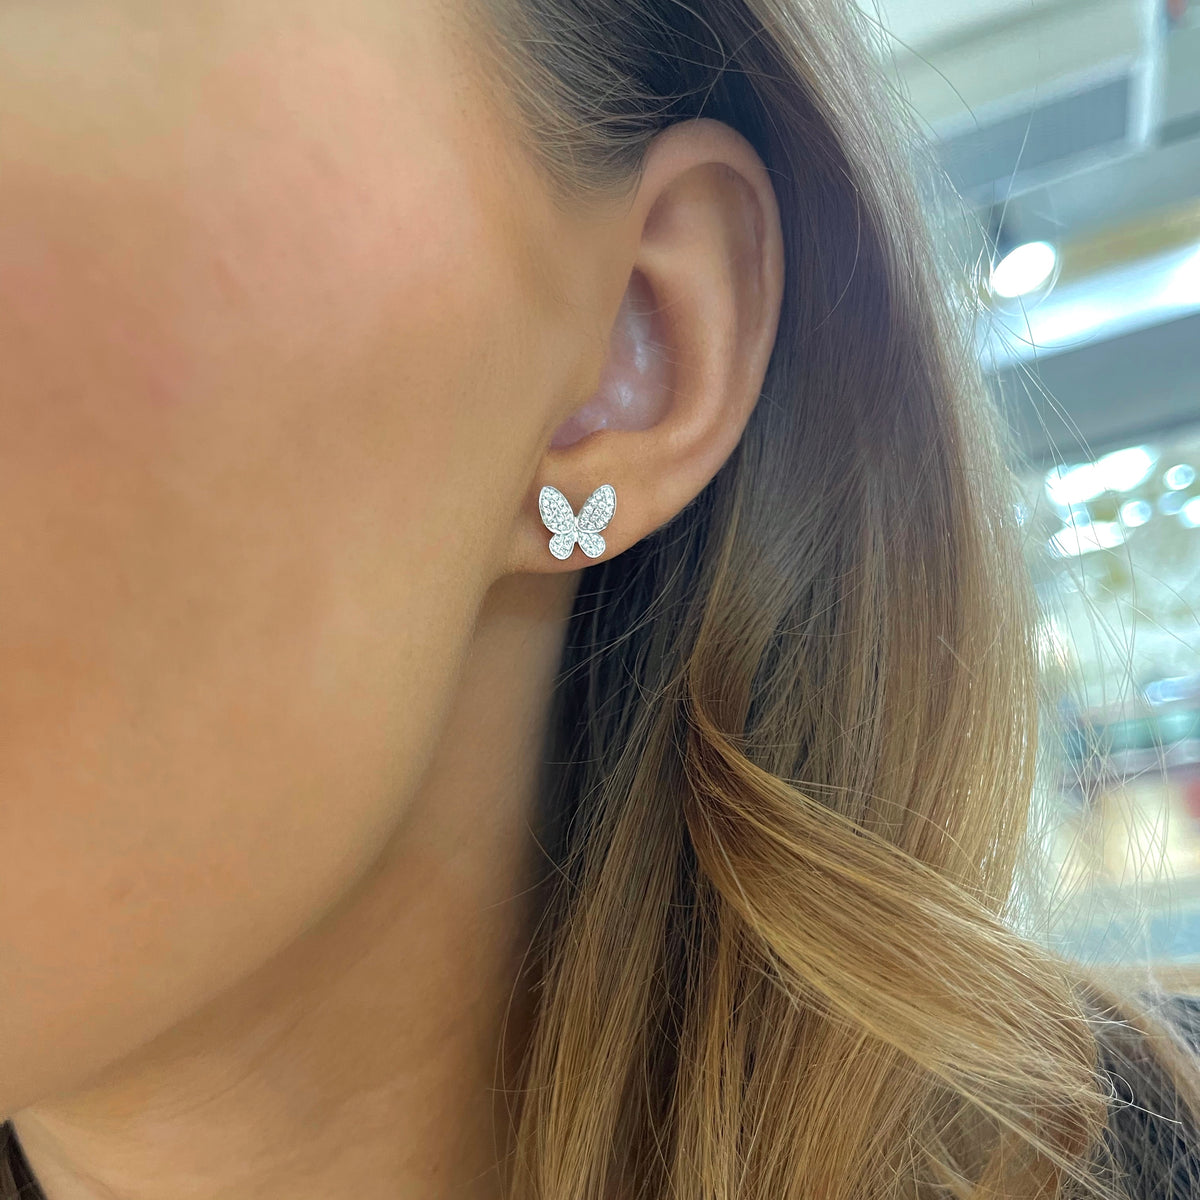 Paloma Butterfly Diamond Stud Earrings